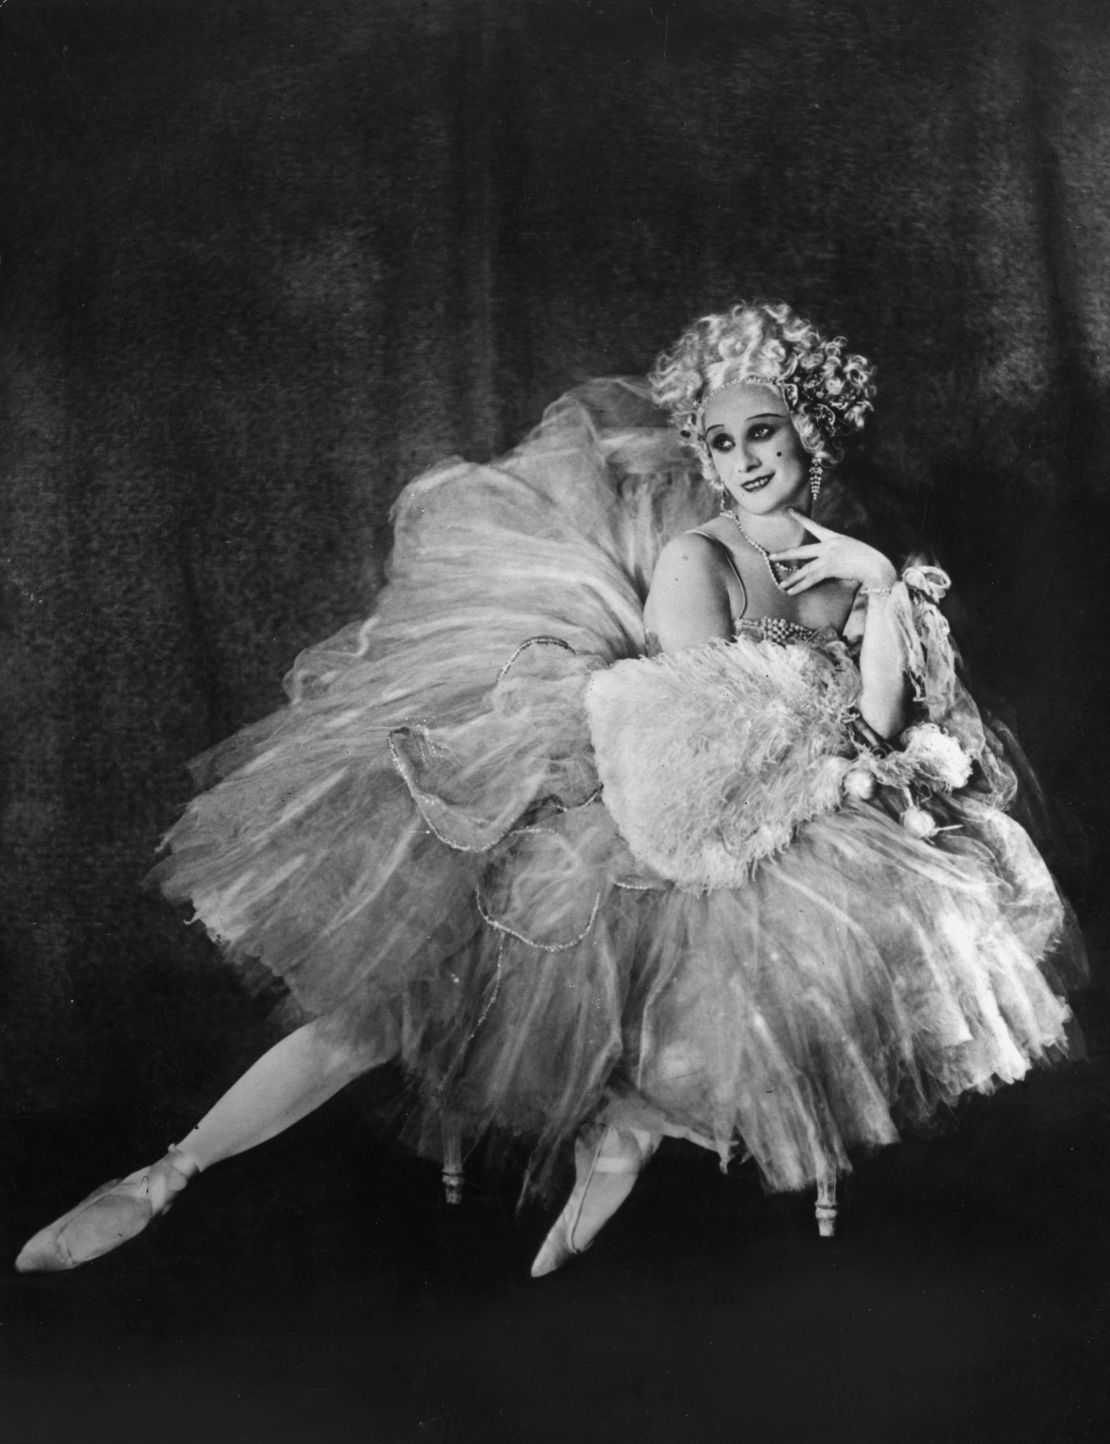 Ballerina Anna Pavlova (1885 - 1931) in costume for the ballet, "Rondino," 1910.